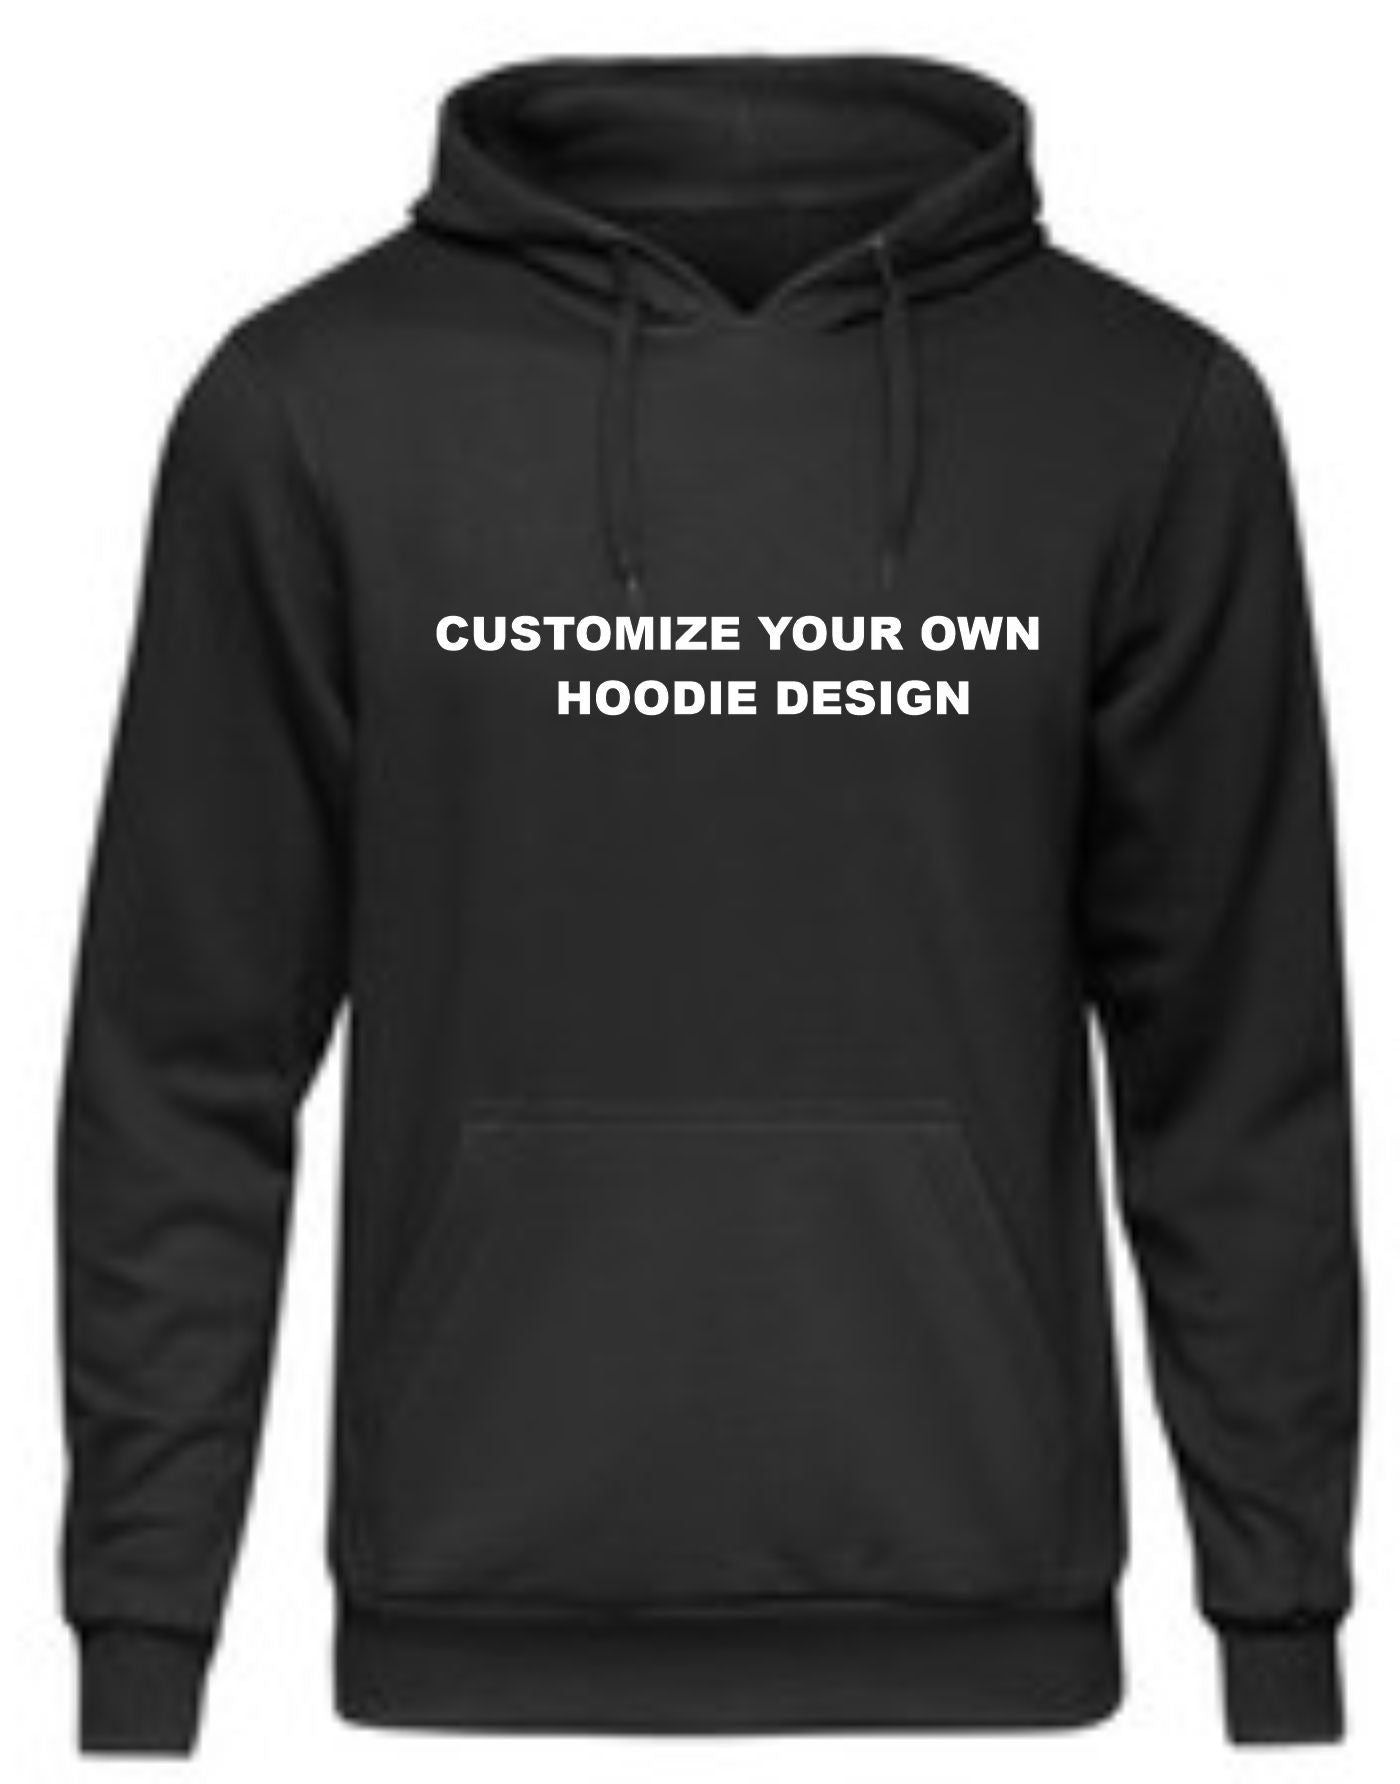 Design you own custom Sweatshirt Pullover (Hoodie)